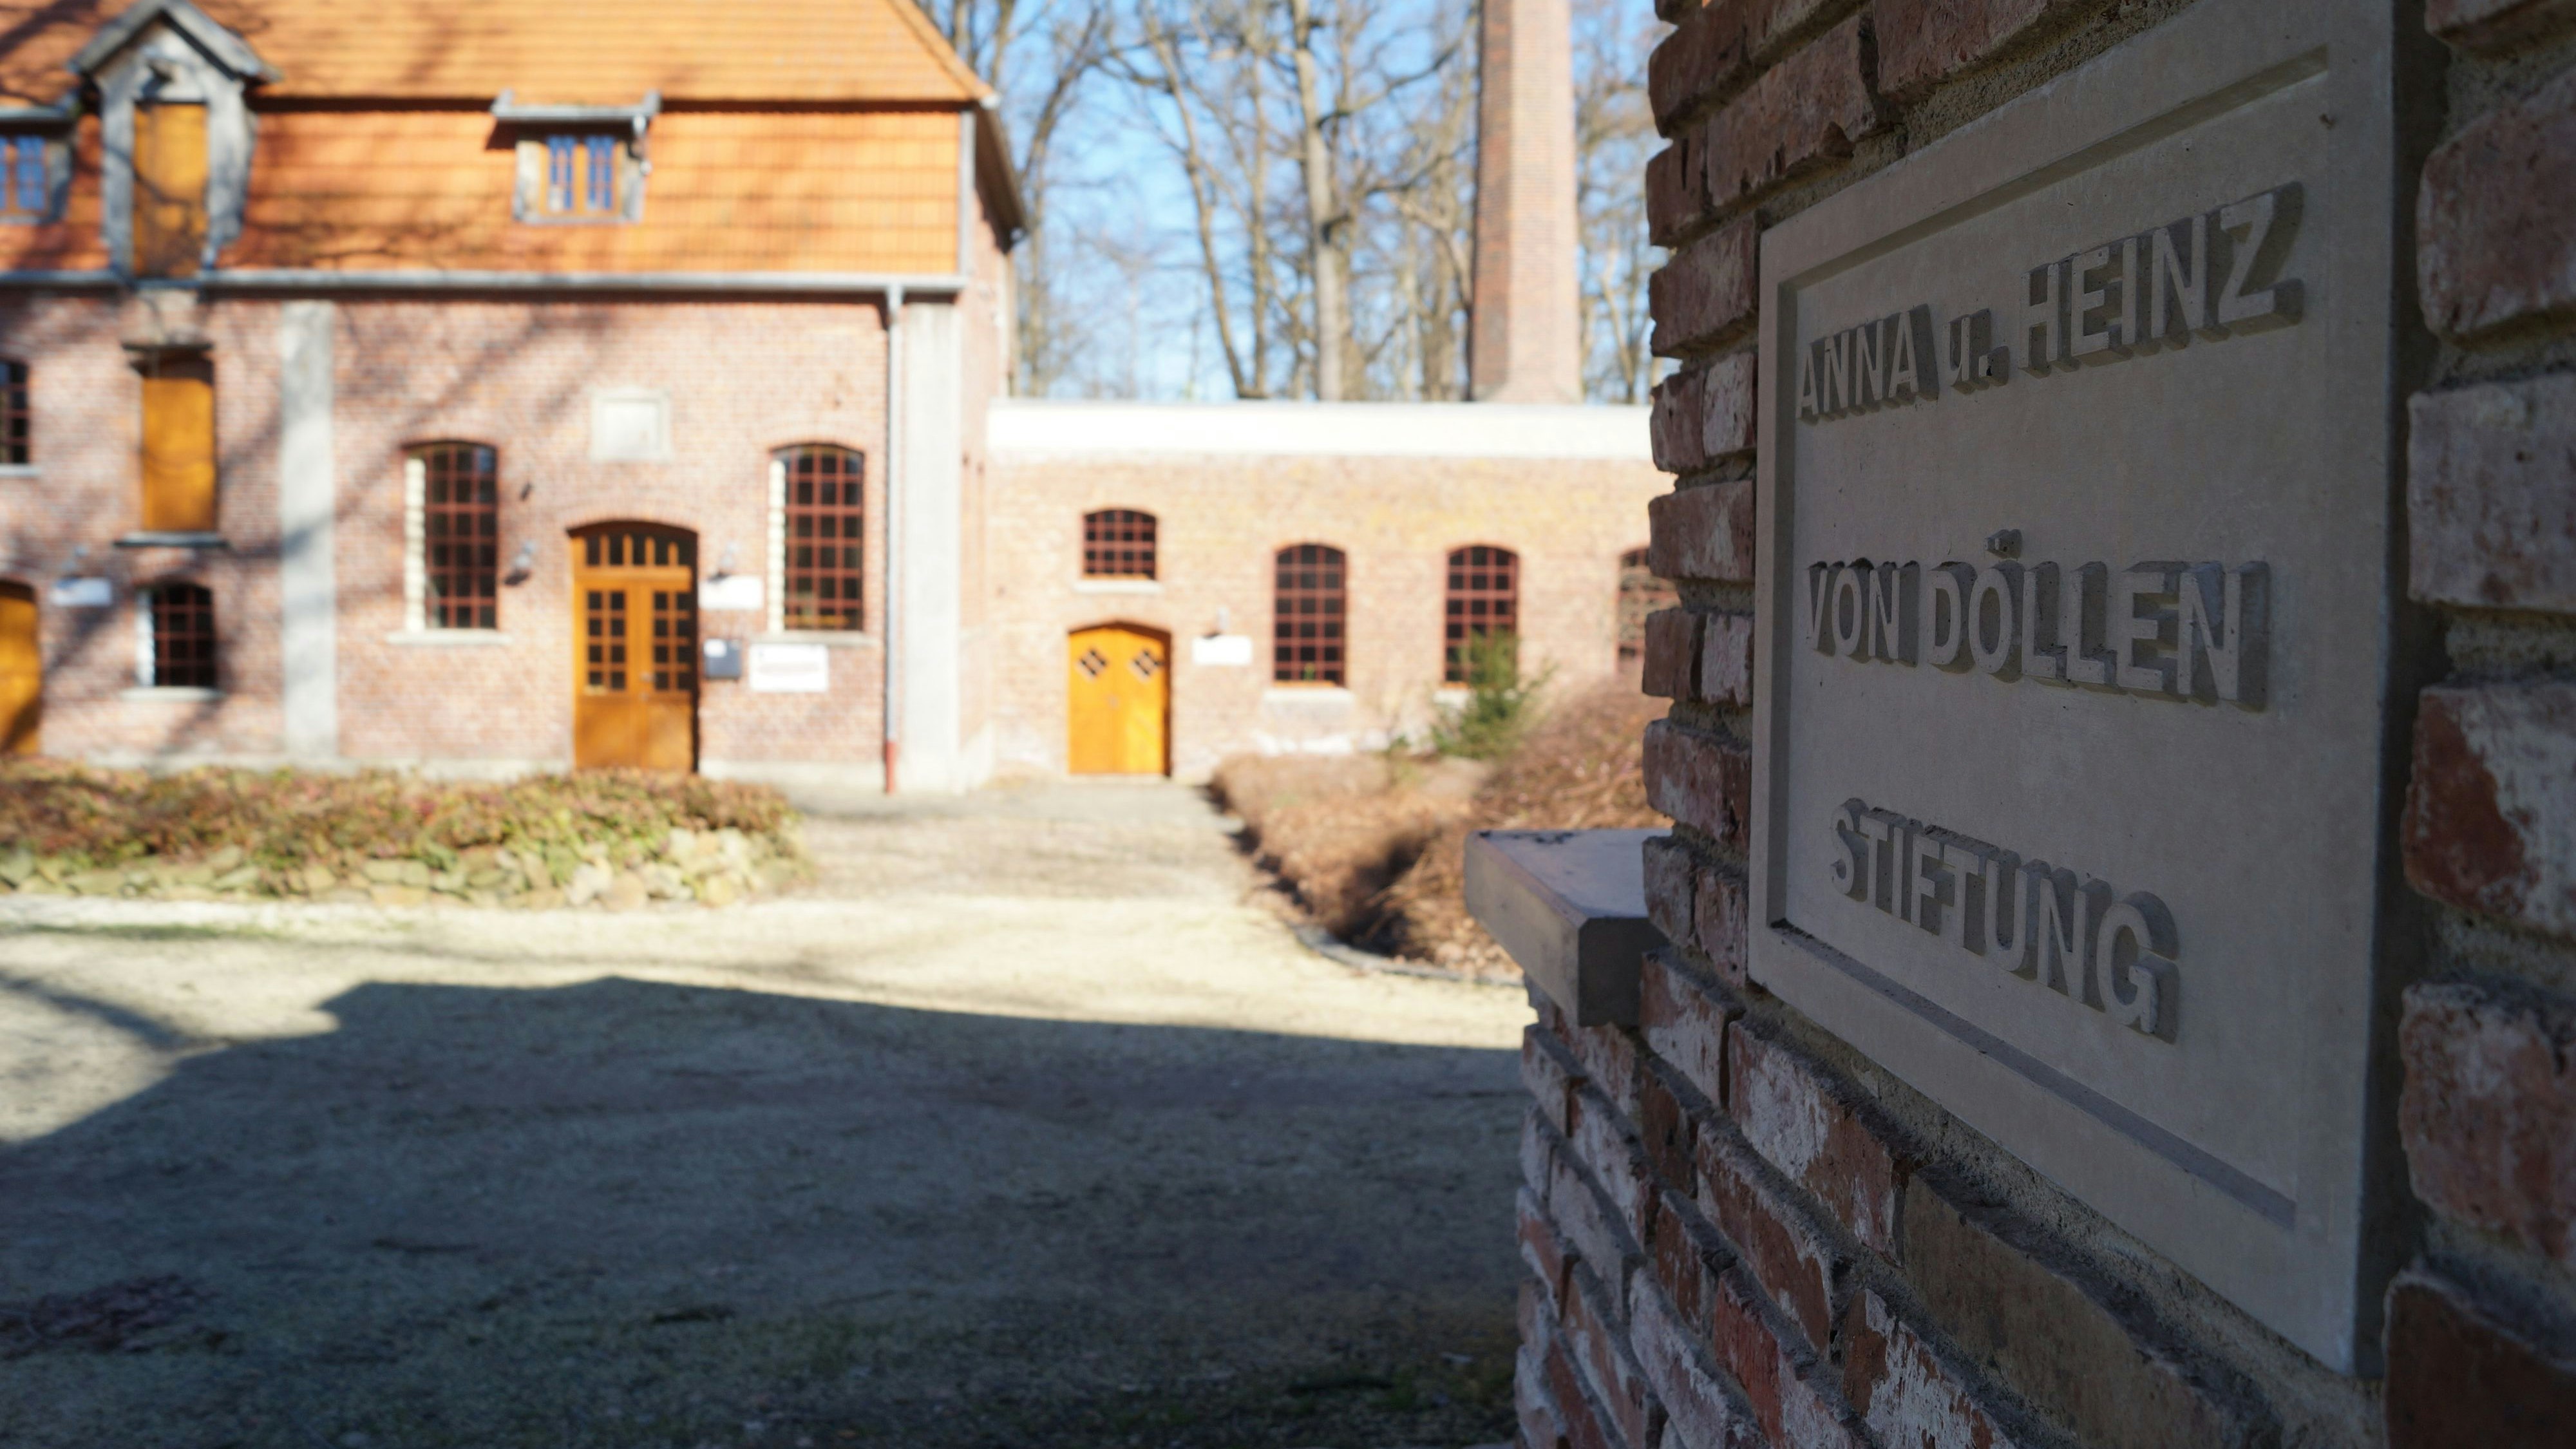 Kulturgut bewahren – das ist das Motto der Anna-und-Heinz-von-Döllen-Stiftung, die sich um den Erhalt des Bredemeyers Hofes und der Arkeburg in Goldenstedt bemüht. Foto: C. Meyer